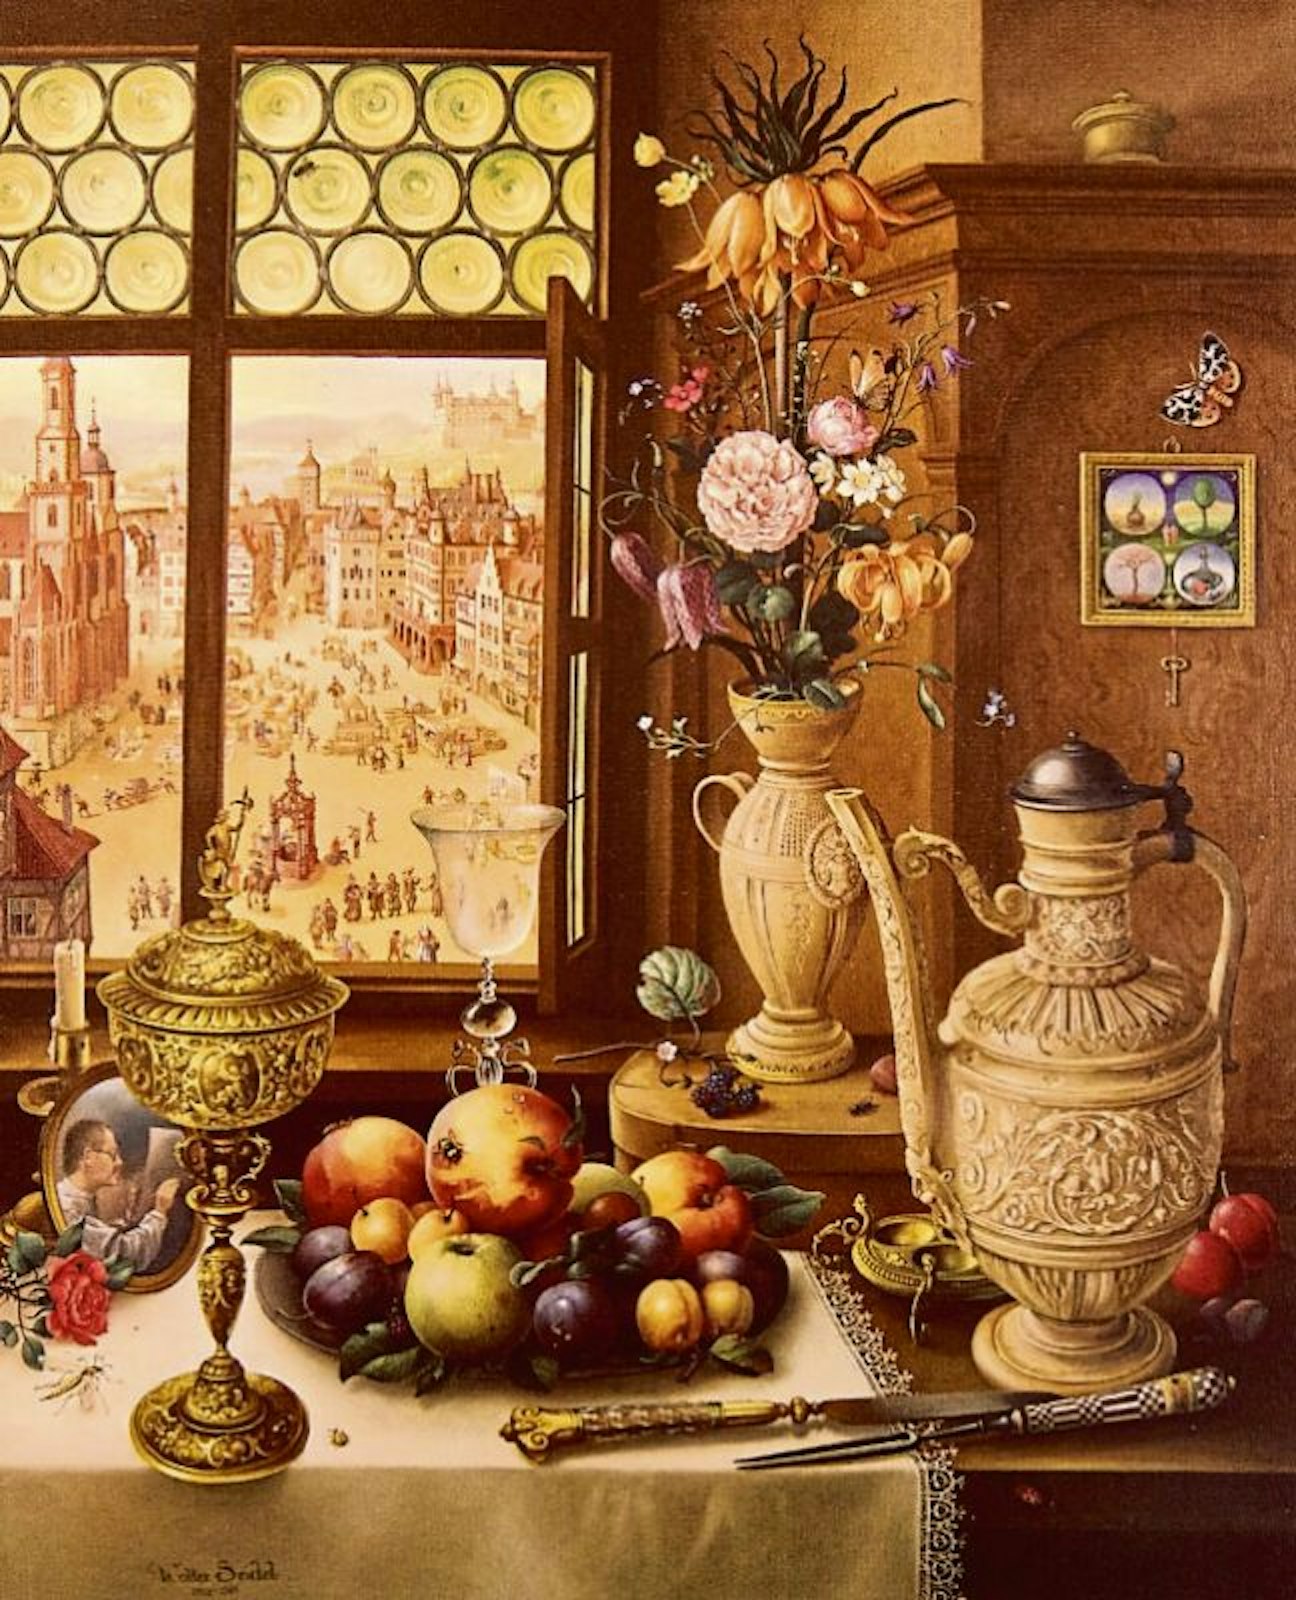 Seidels Gemälde „Meine Welt“ gewährt Einblicke in seine Welt mit seinem geschätzten Siegburger Steinzeug. Rechts vorne eine Stegkanne von 1593, die er im Original besitzt (rechtes Bild), links dahinter ein „Trichterkrüglein“. Den Blumenstrauß ziert oben die Kaiserkrone.